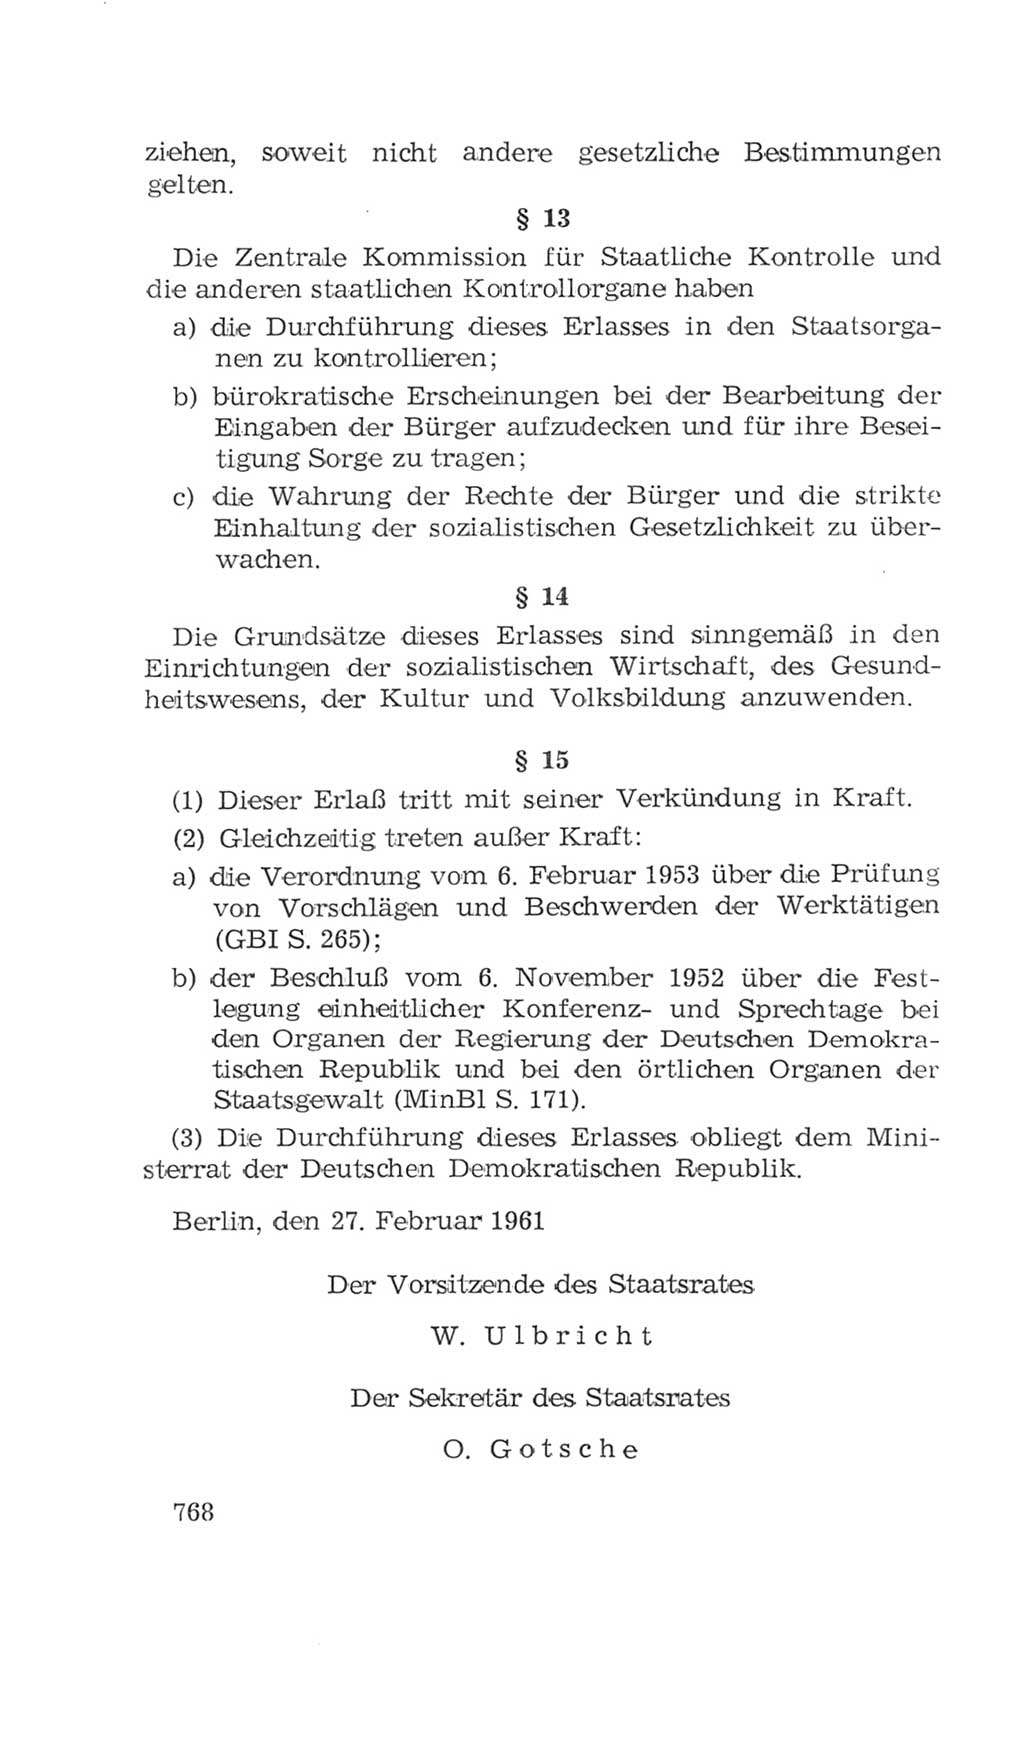 Volkskammer (VK) der Deutschen Demokratischen Republik (DDR), 4. Wahlperiode 1963-1967, Seite 768 (VK. DDR 4. WP. 1963-1967, S. 768)